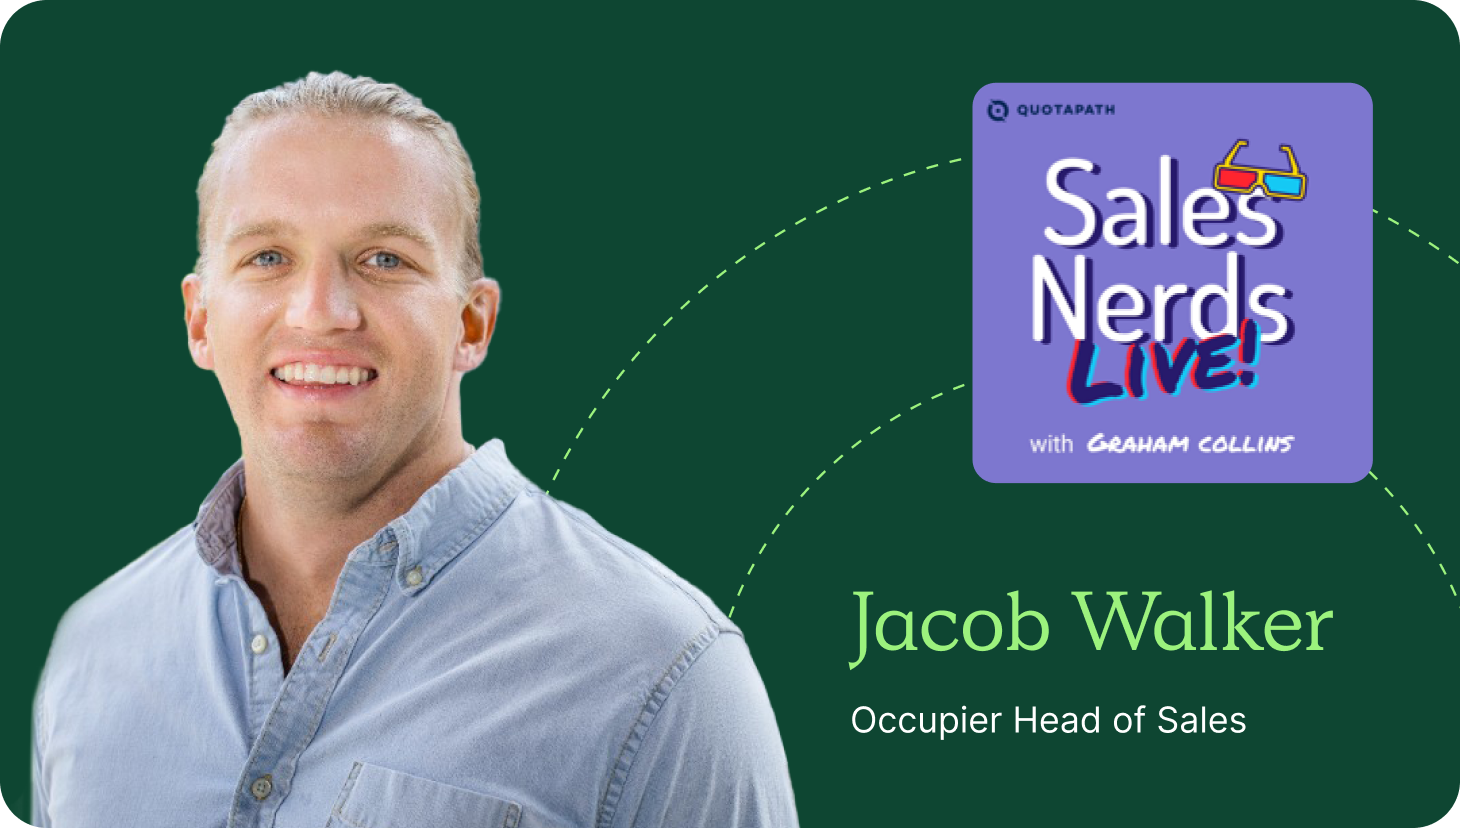 Jacob Walker on sales nerds live